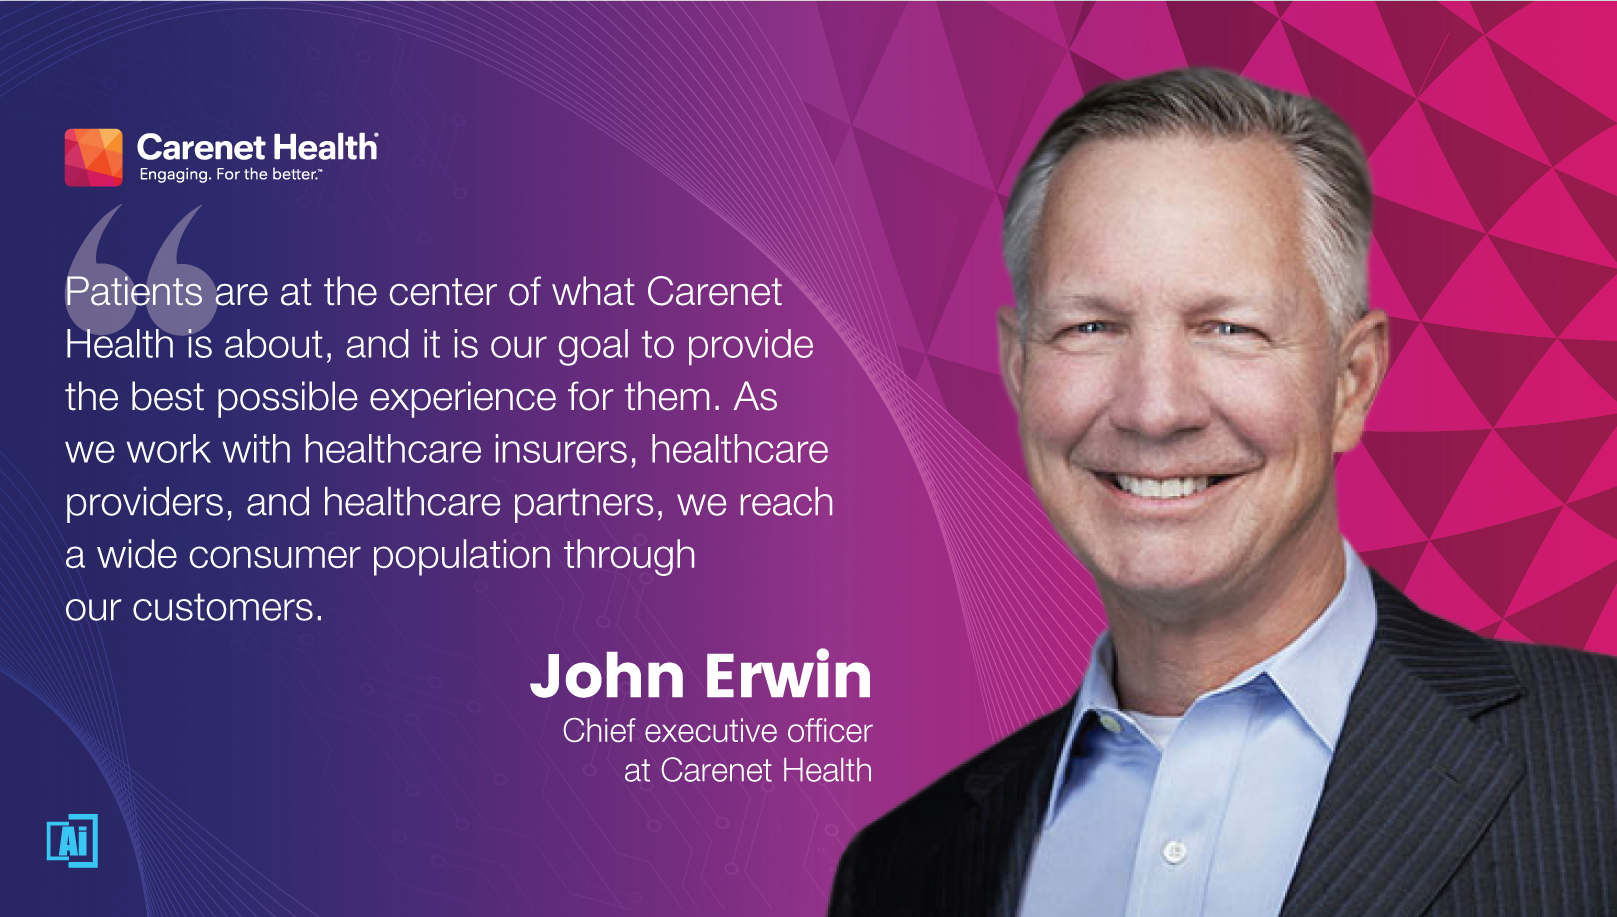 John Erwin, Chief Executive Officer at Carenet Health